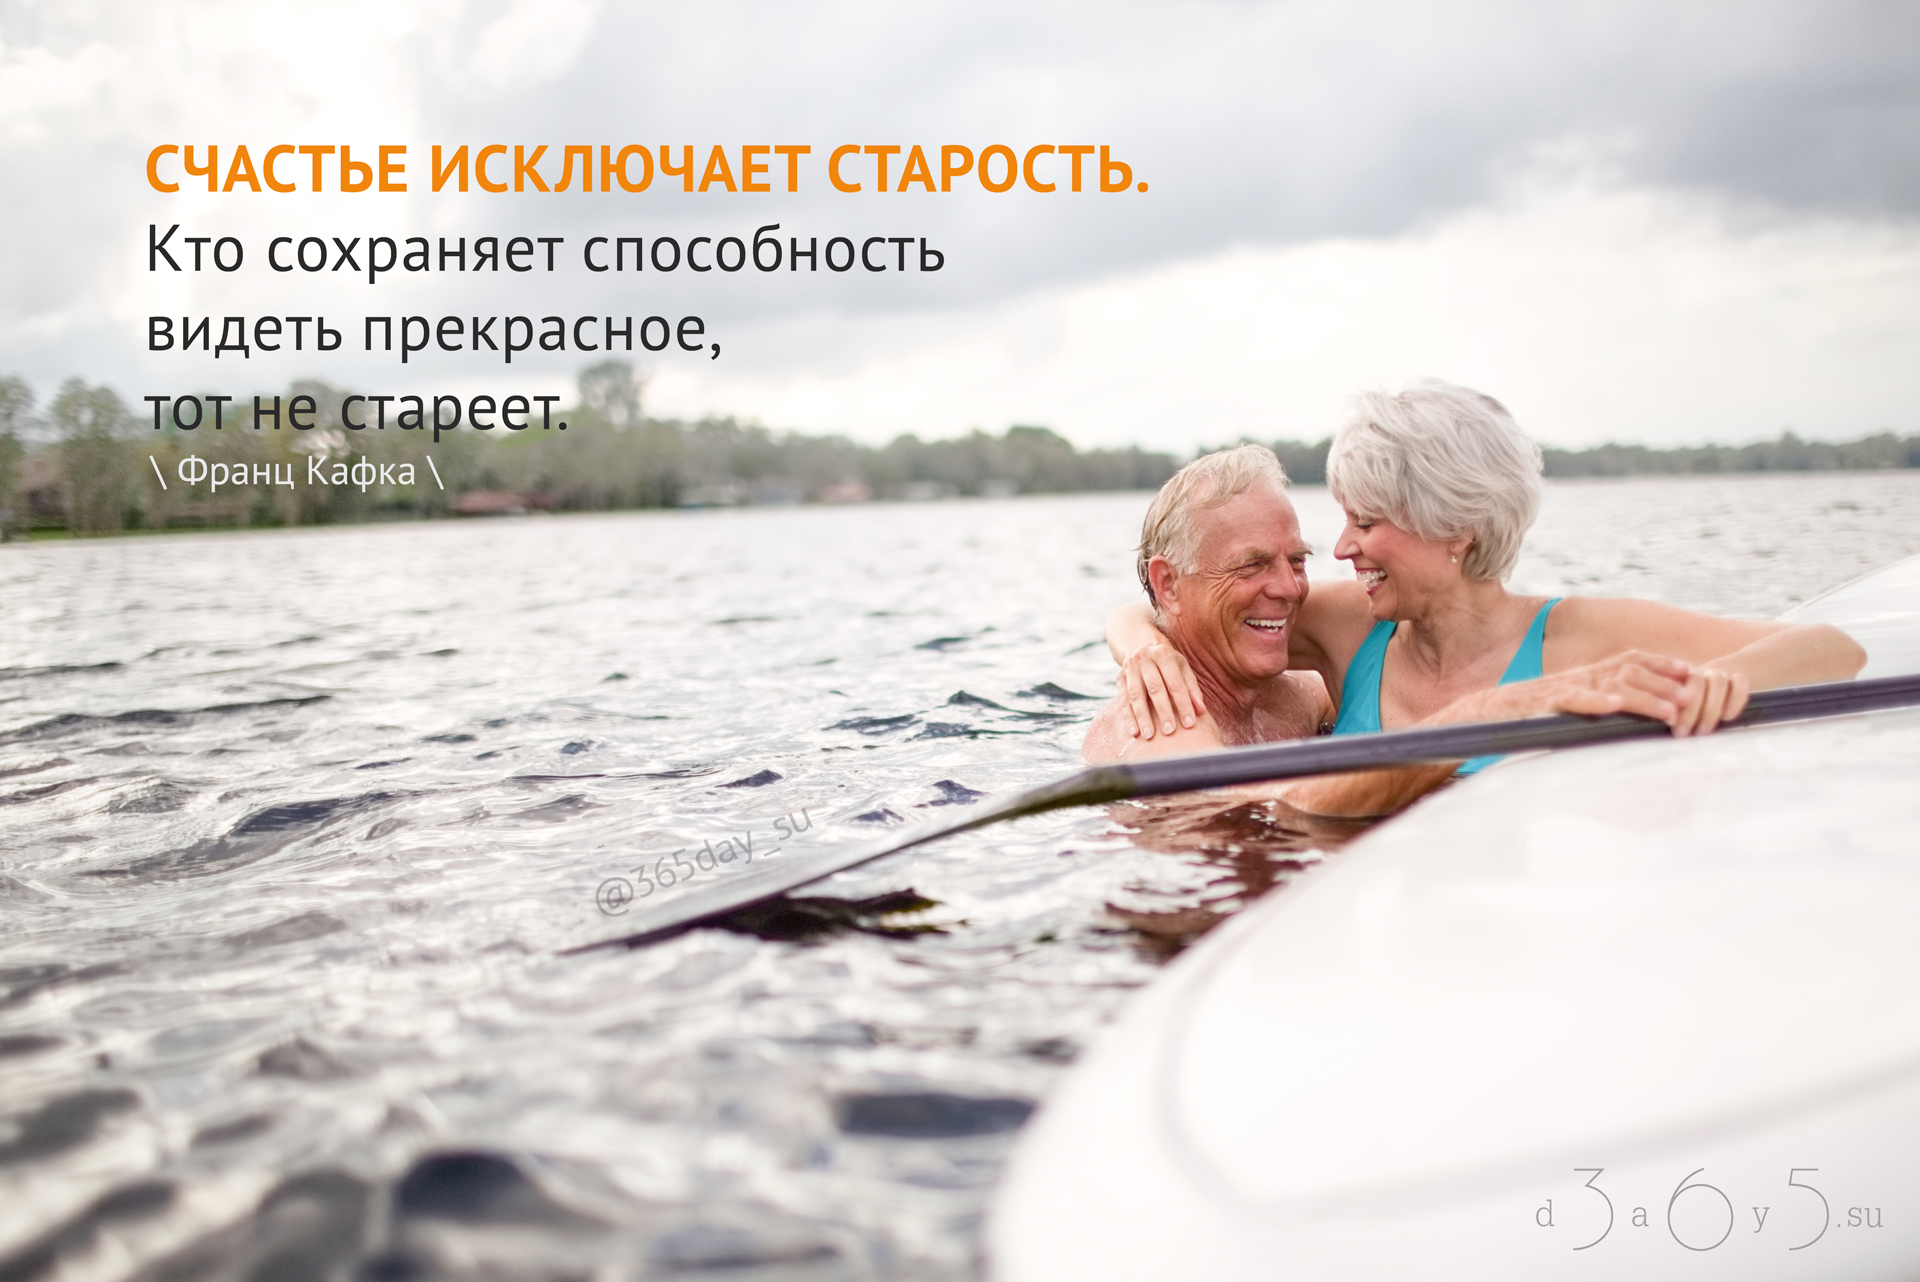 Счастье без возраста. Счастье в старости. Счастье исключает старость. Способность видеть прекрасное. Пенсионер в воде.